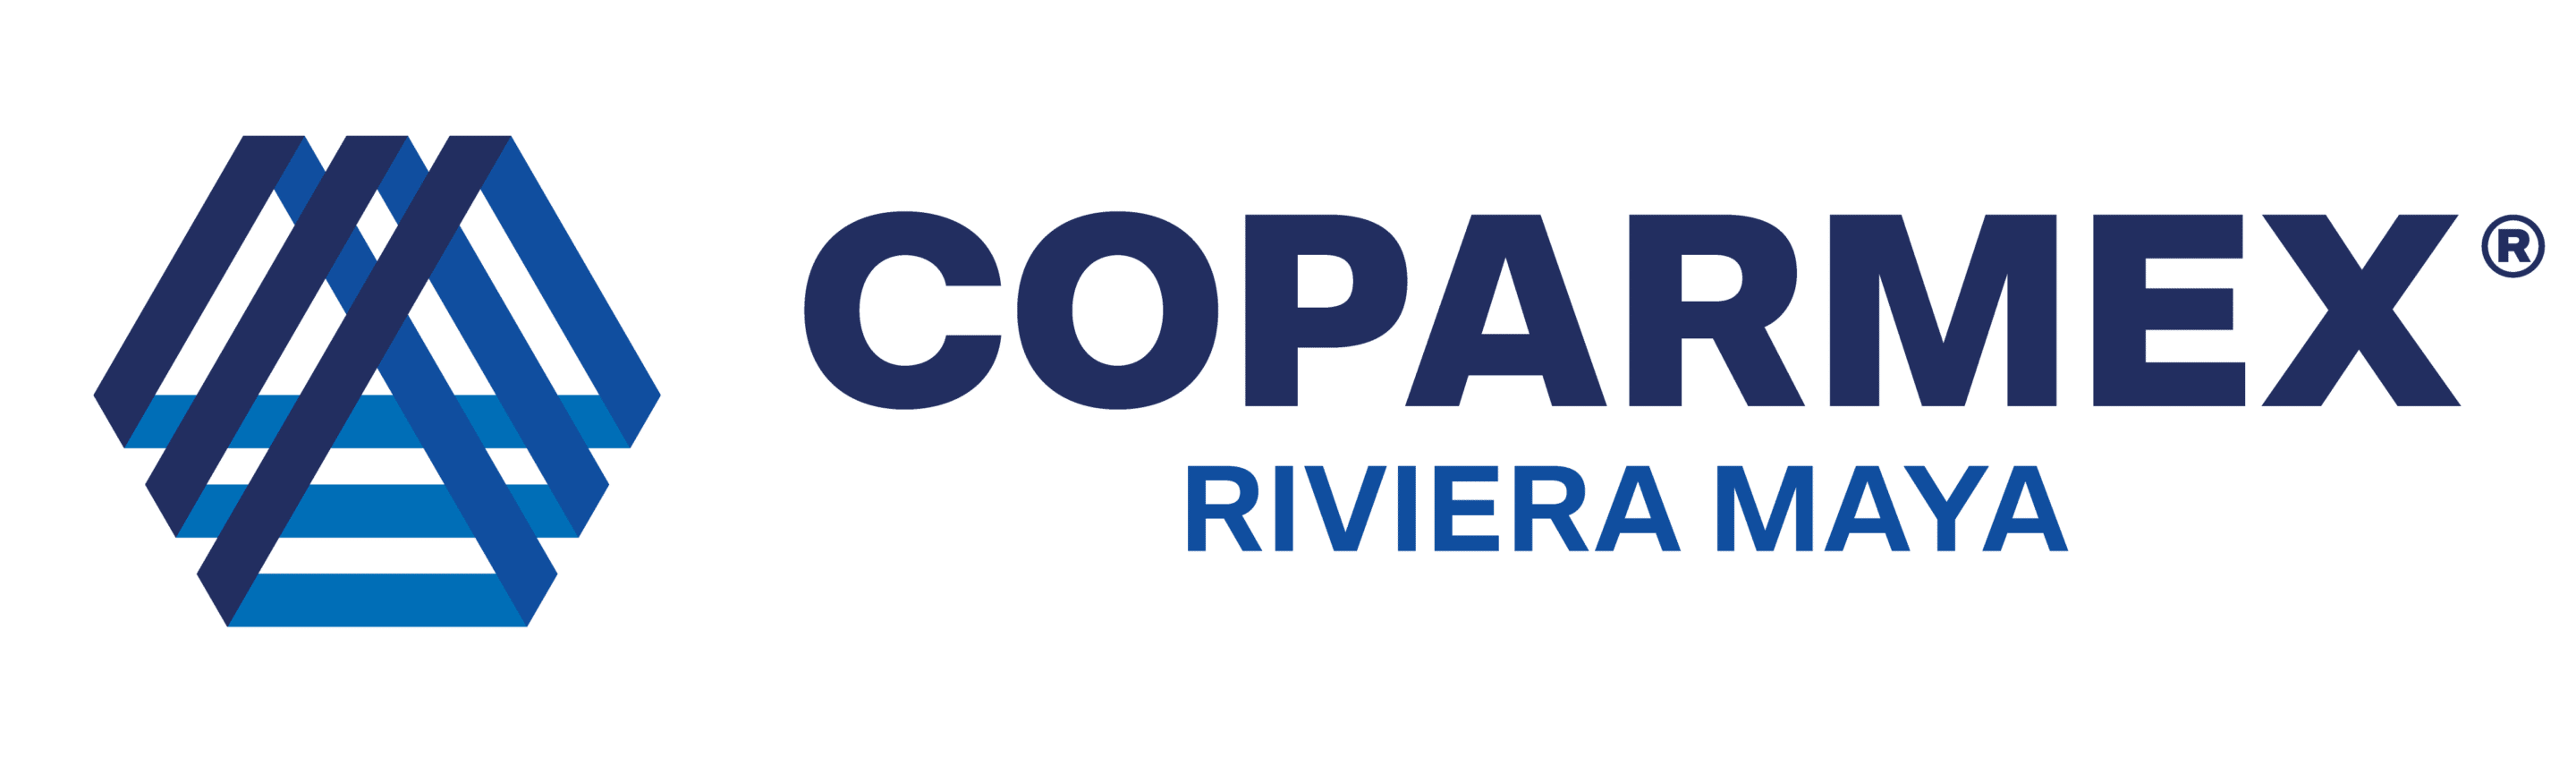 Coparmex Logo